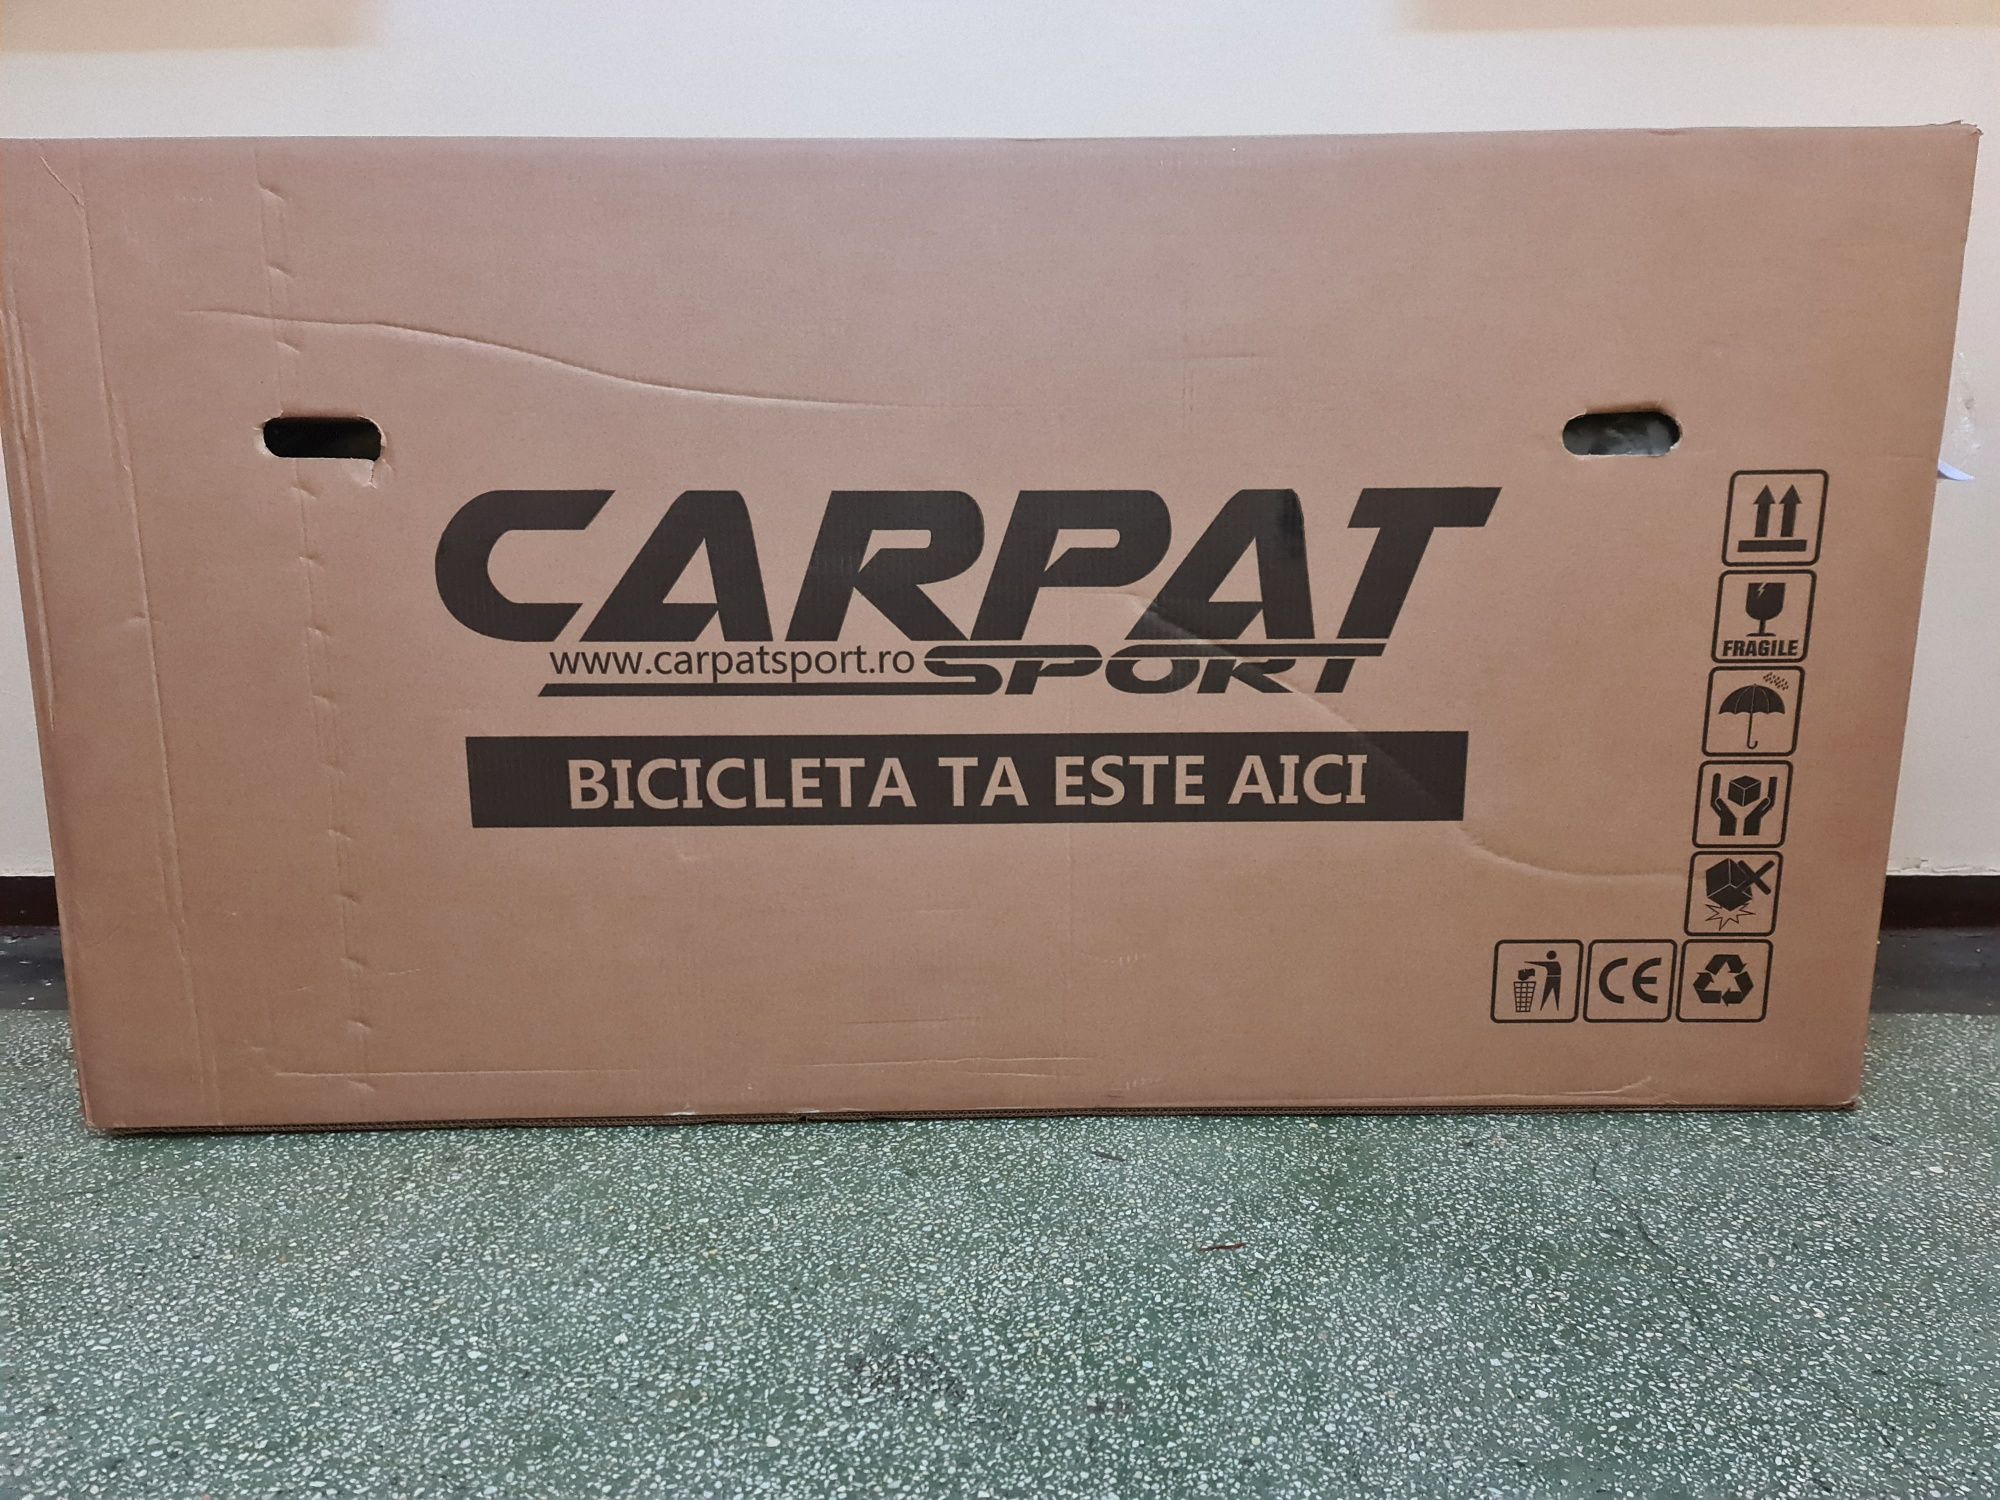 Bicicleta MTB 29" Carpat C2999A, Negru/Albastru/Alb Noua Sigilata